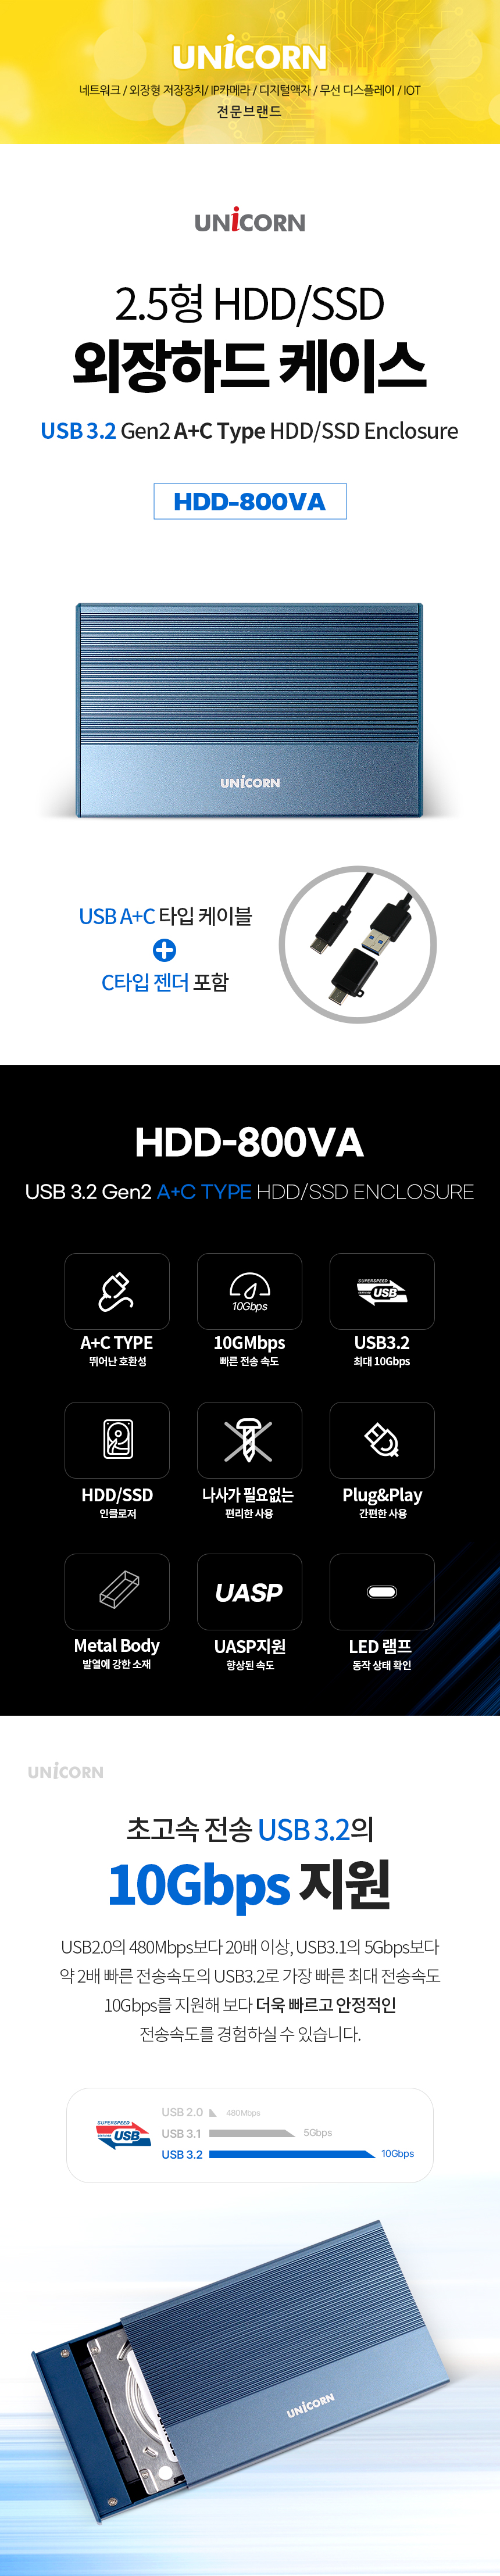 HDD-800VA-1.jpg